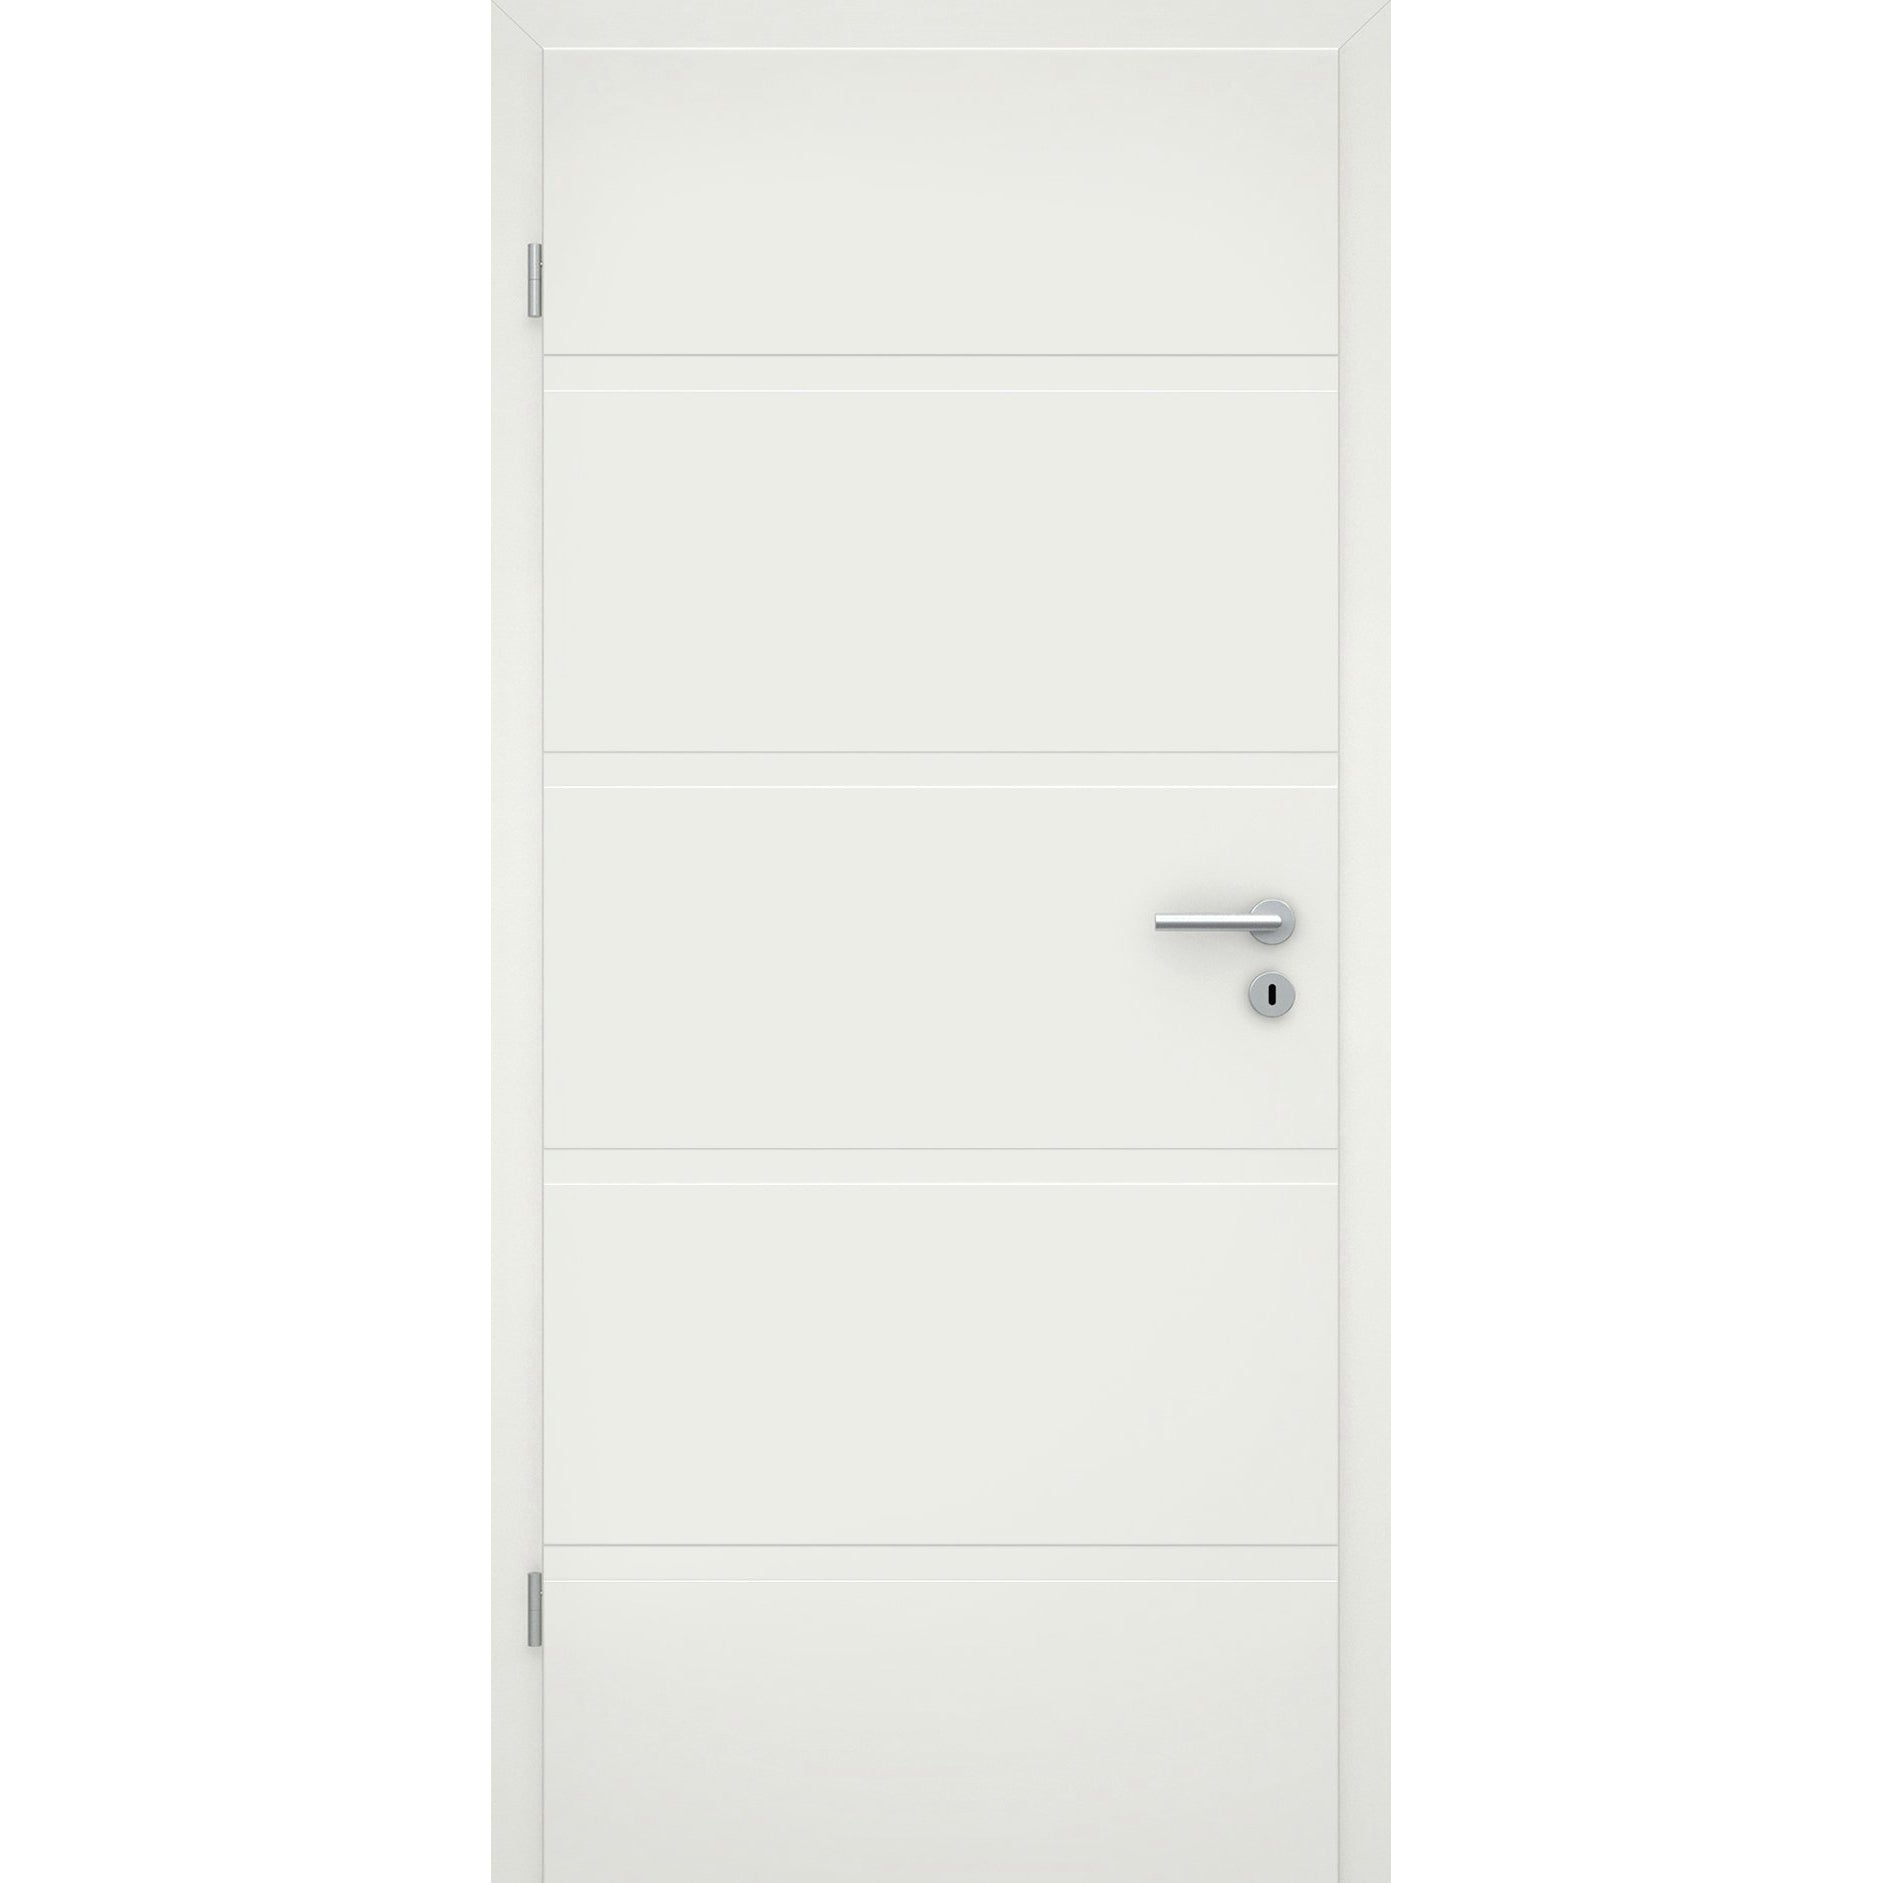 Zimmertür mit Zarge soft-weiß 4 breite Rillen Eckkante - Modell Designtür QB41